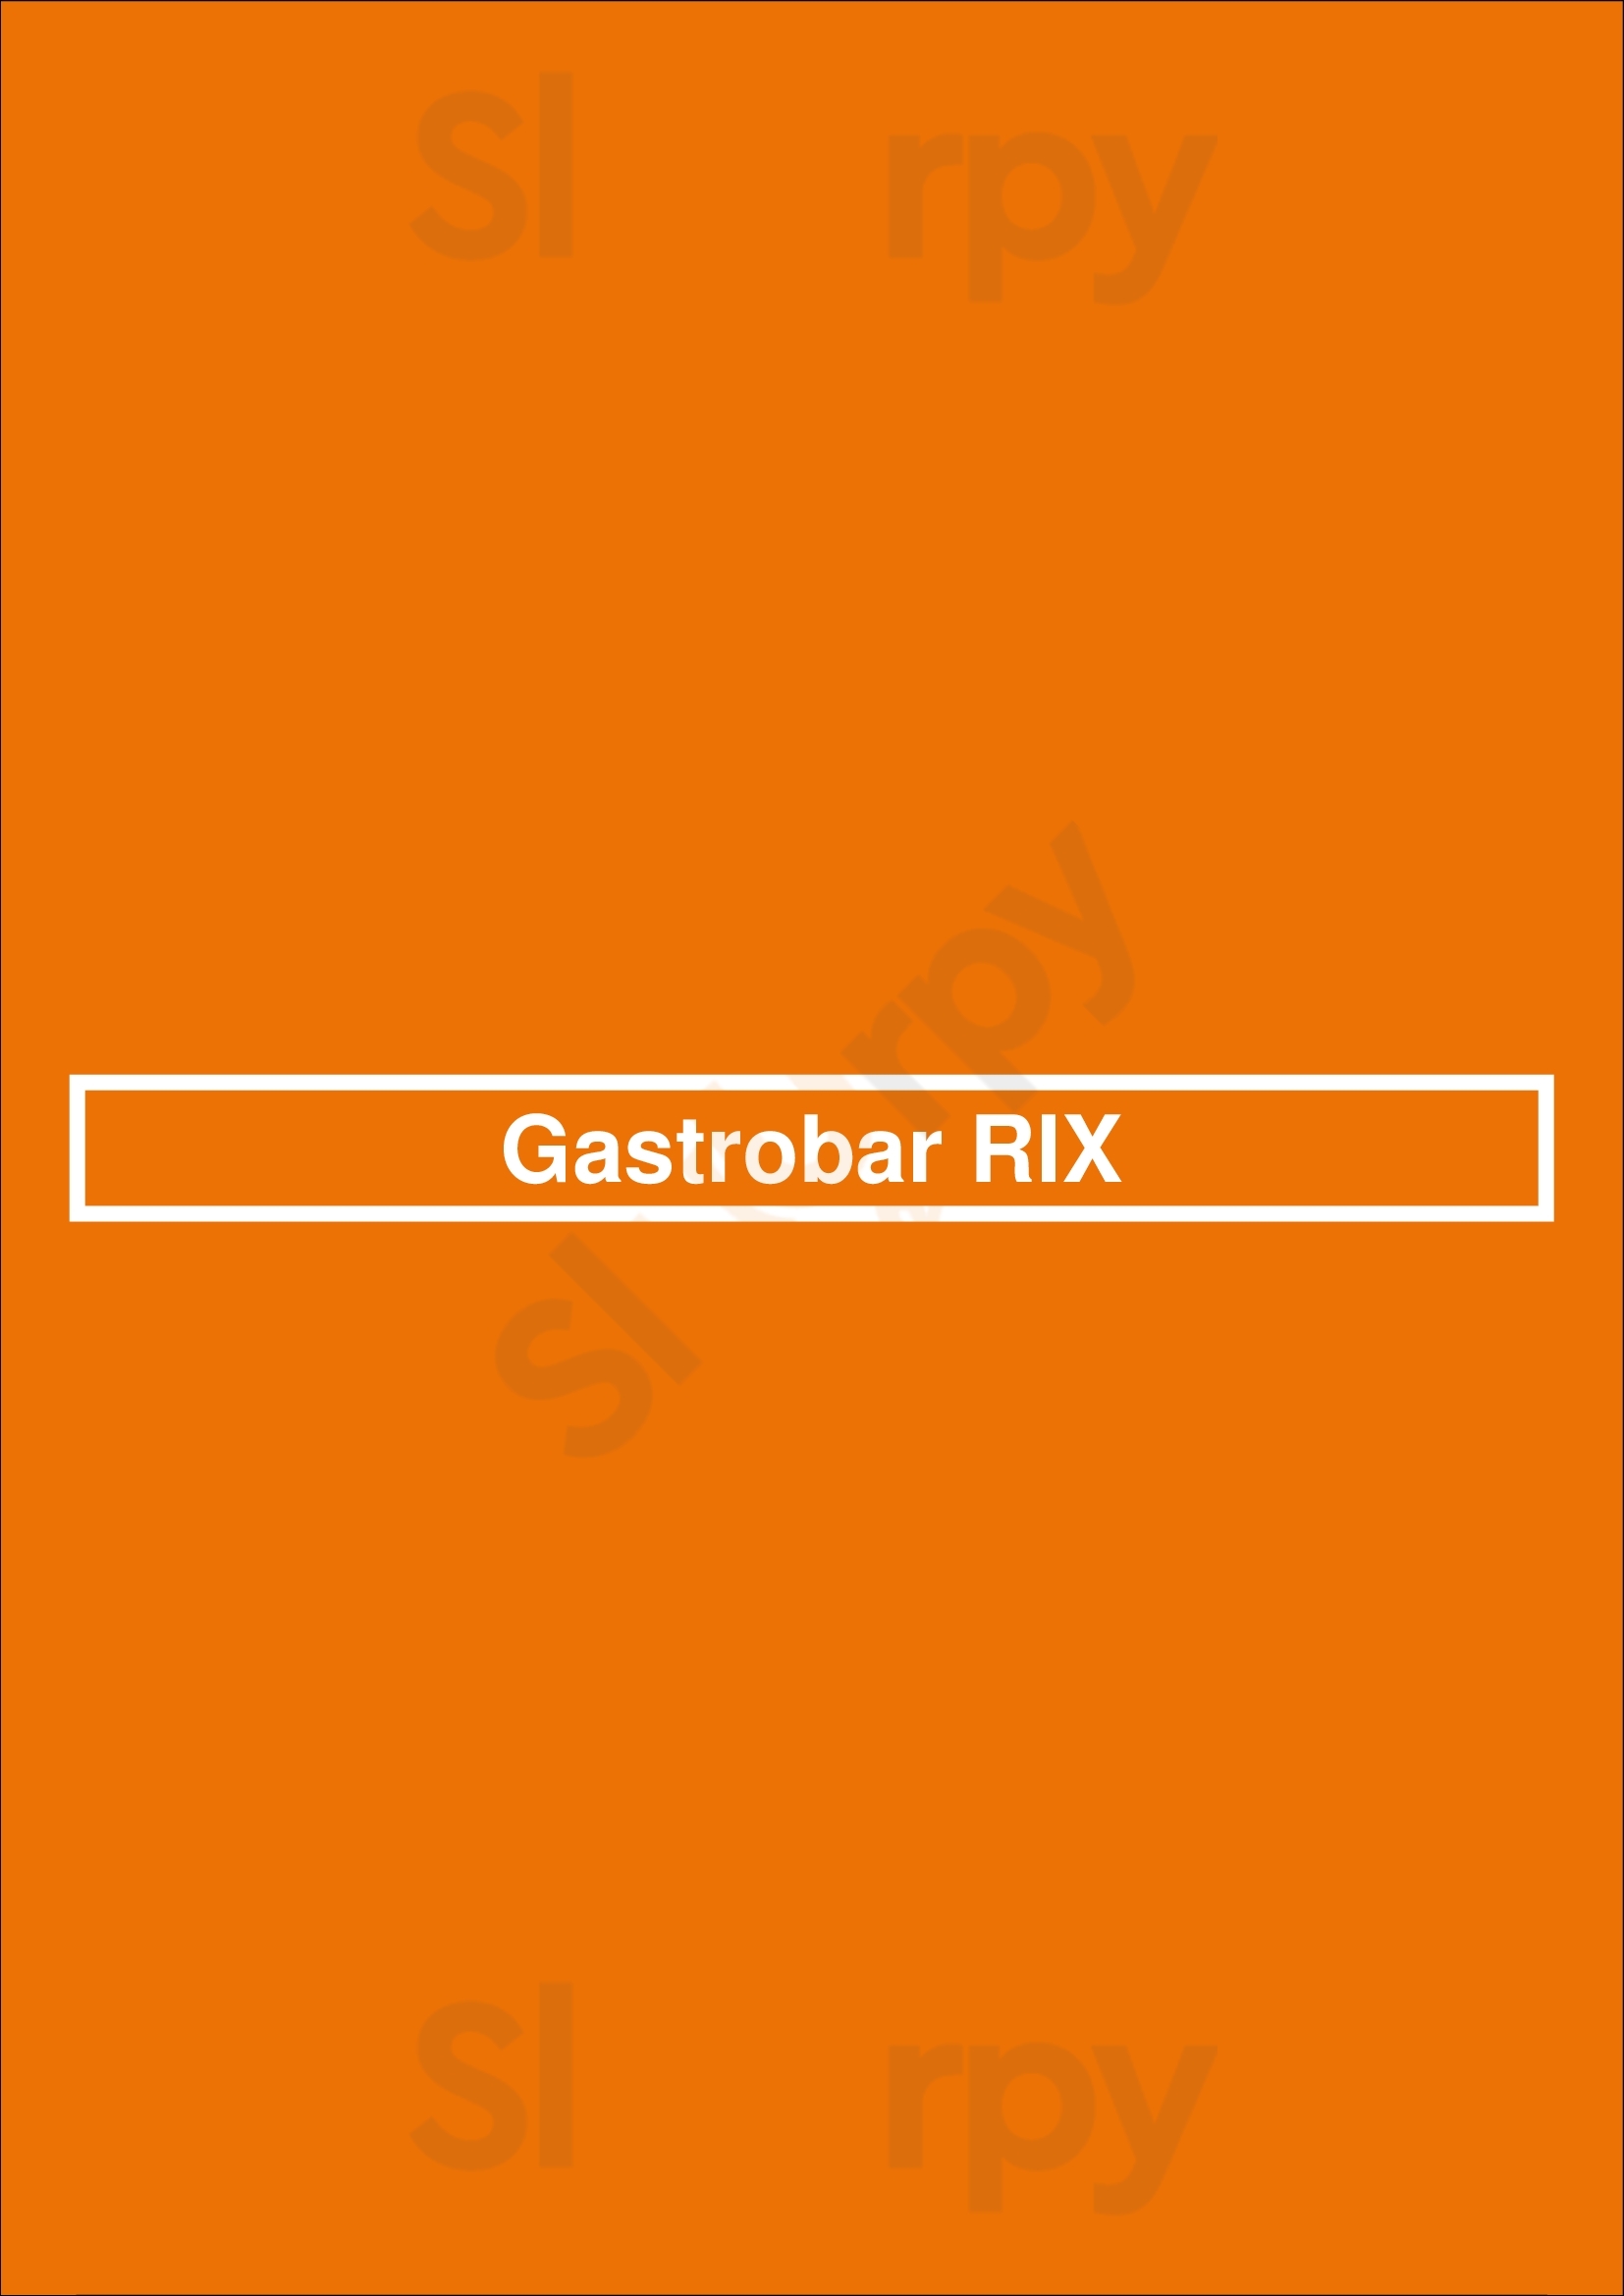 Gastrobar Rix Tilburg Menu - 1